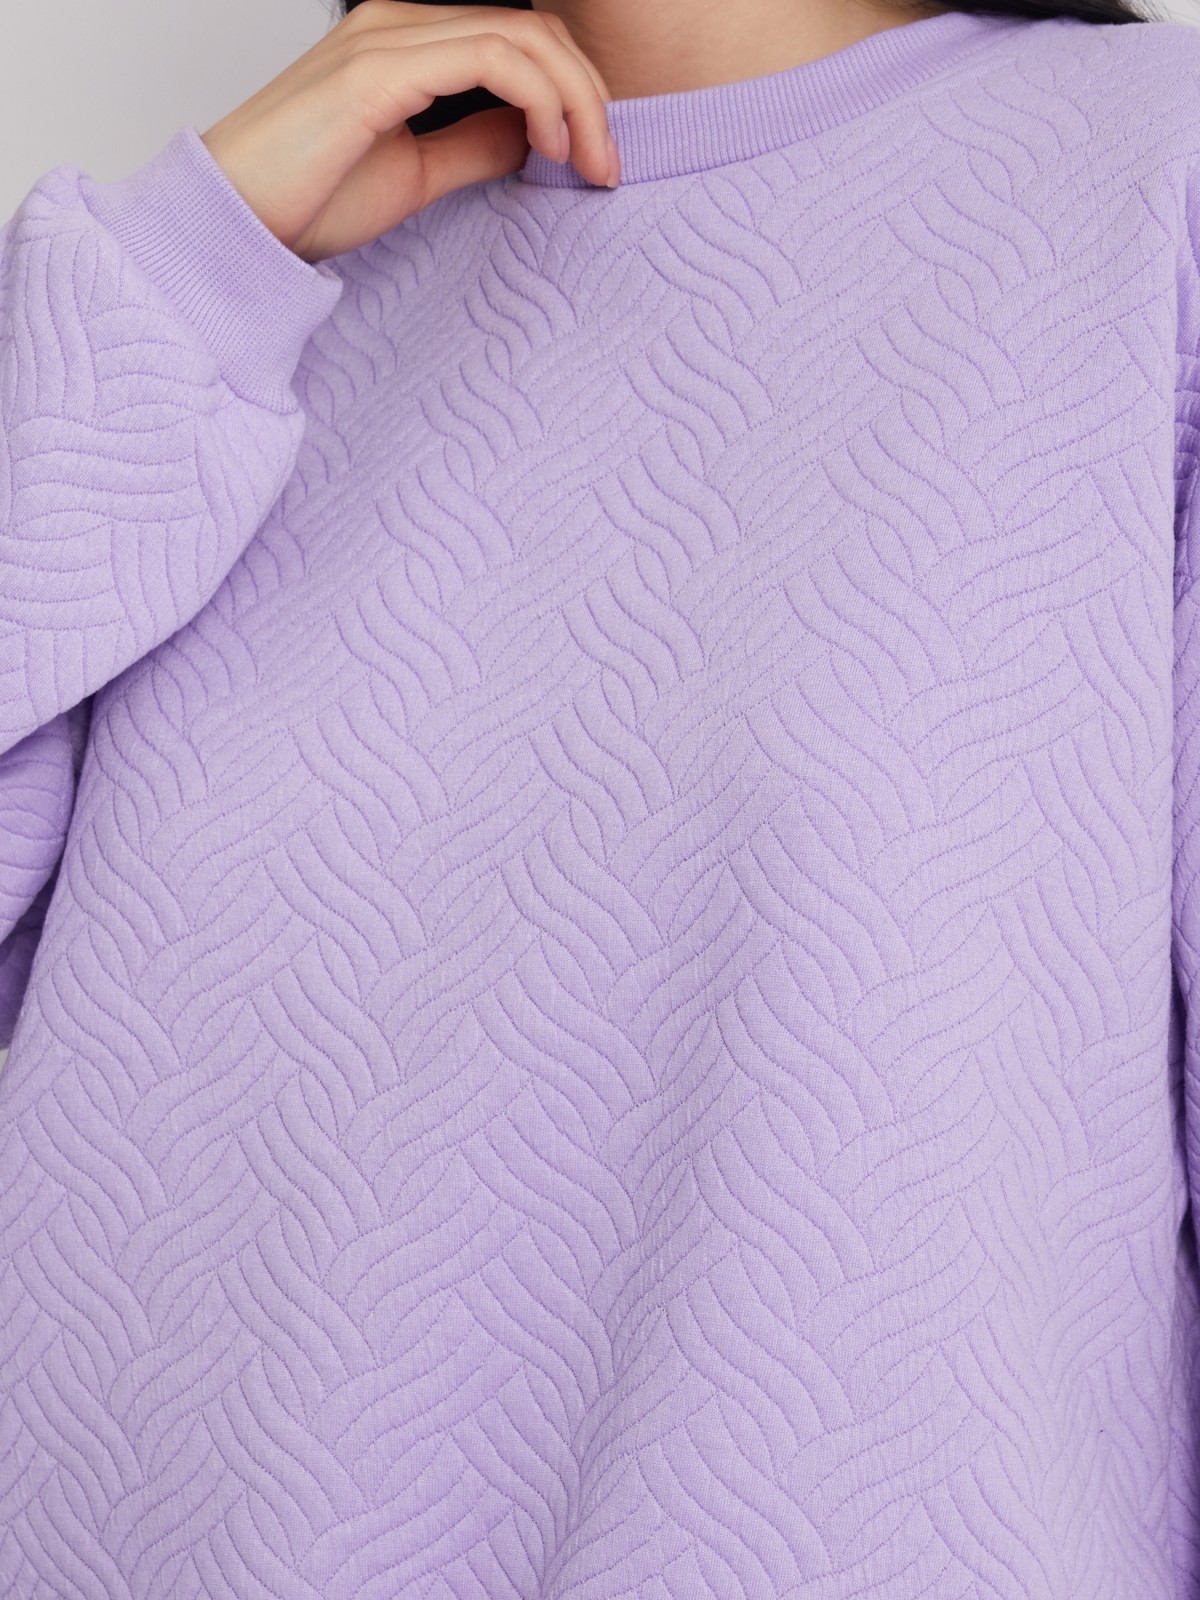 Трикотажный свитшот с фактурным узором на кулиске zolla 02331319F022, цвет лиловый, размер S - фото 4